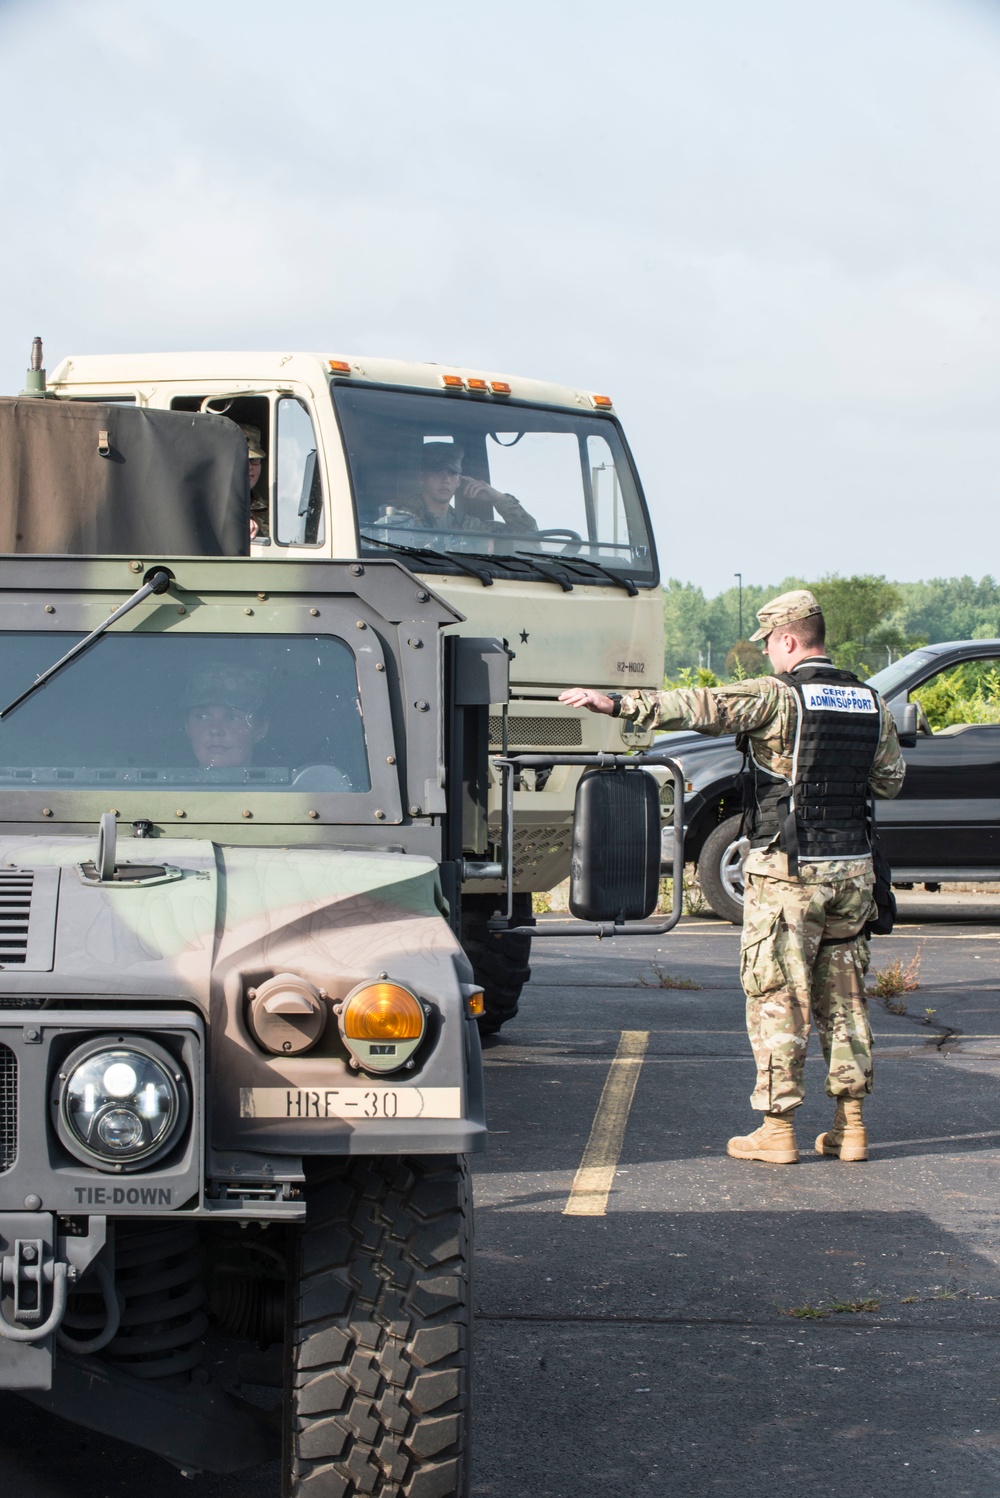 Ohio Vigilant Guard 19-4 operations at Rickenbacker Air National Guard Base